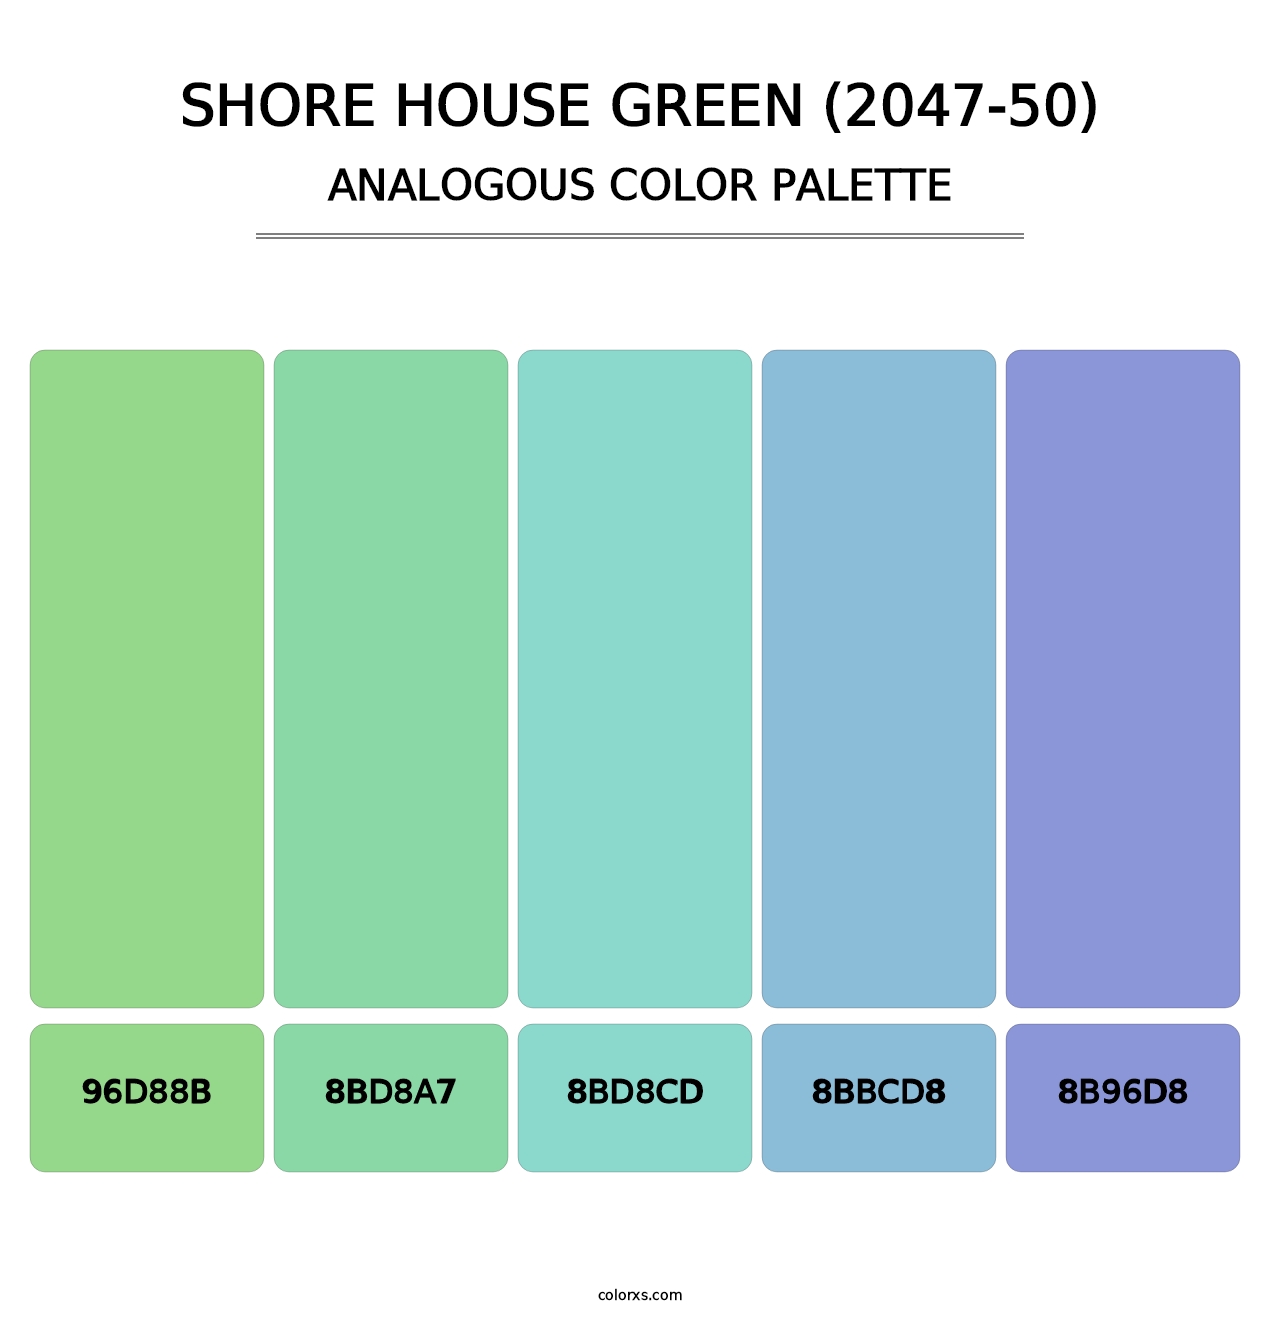 Shore House Green (2047-50) - Analogous Color Palette